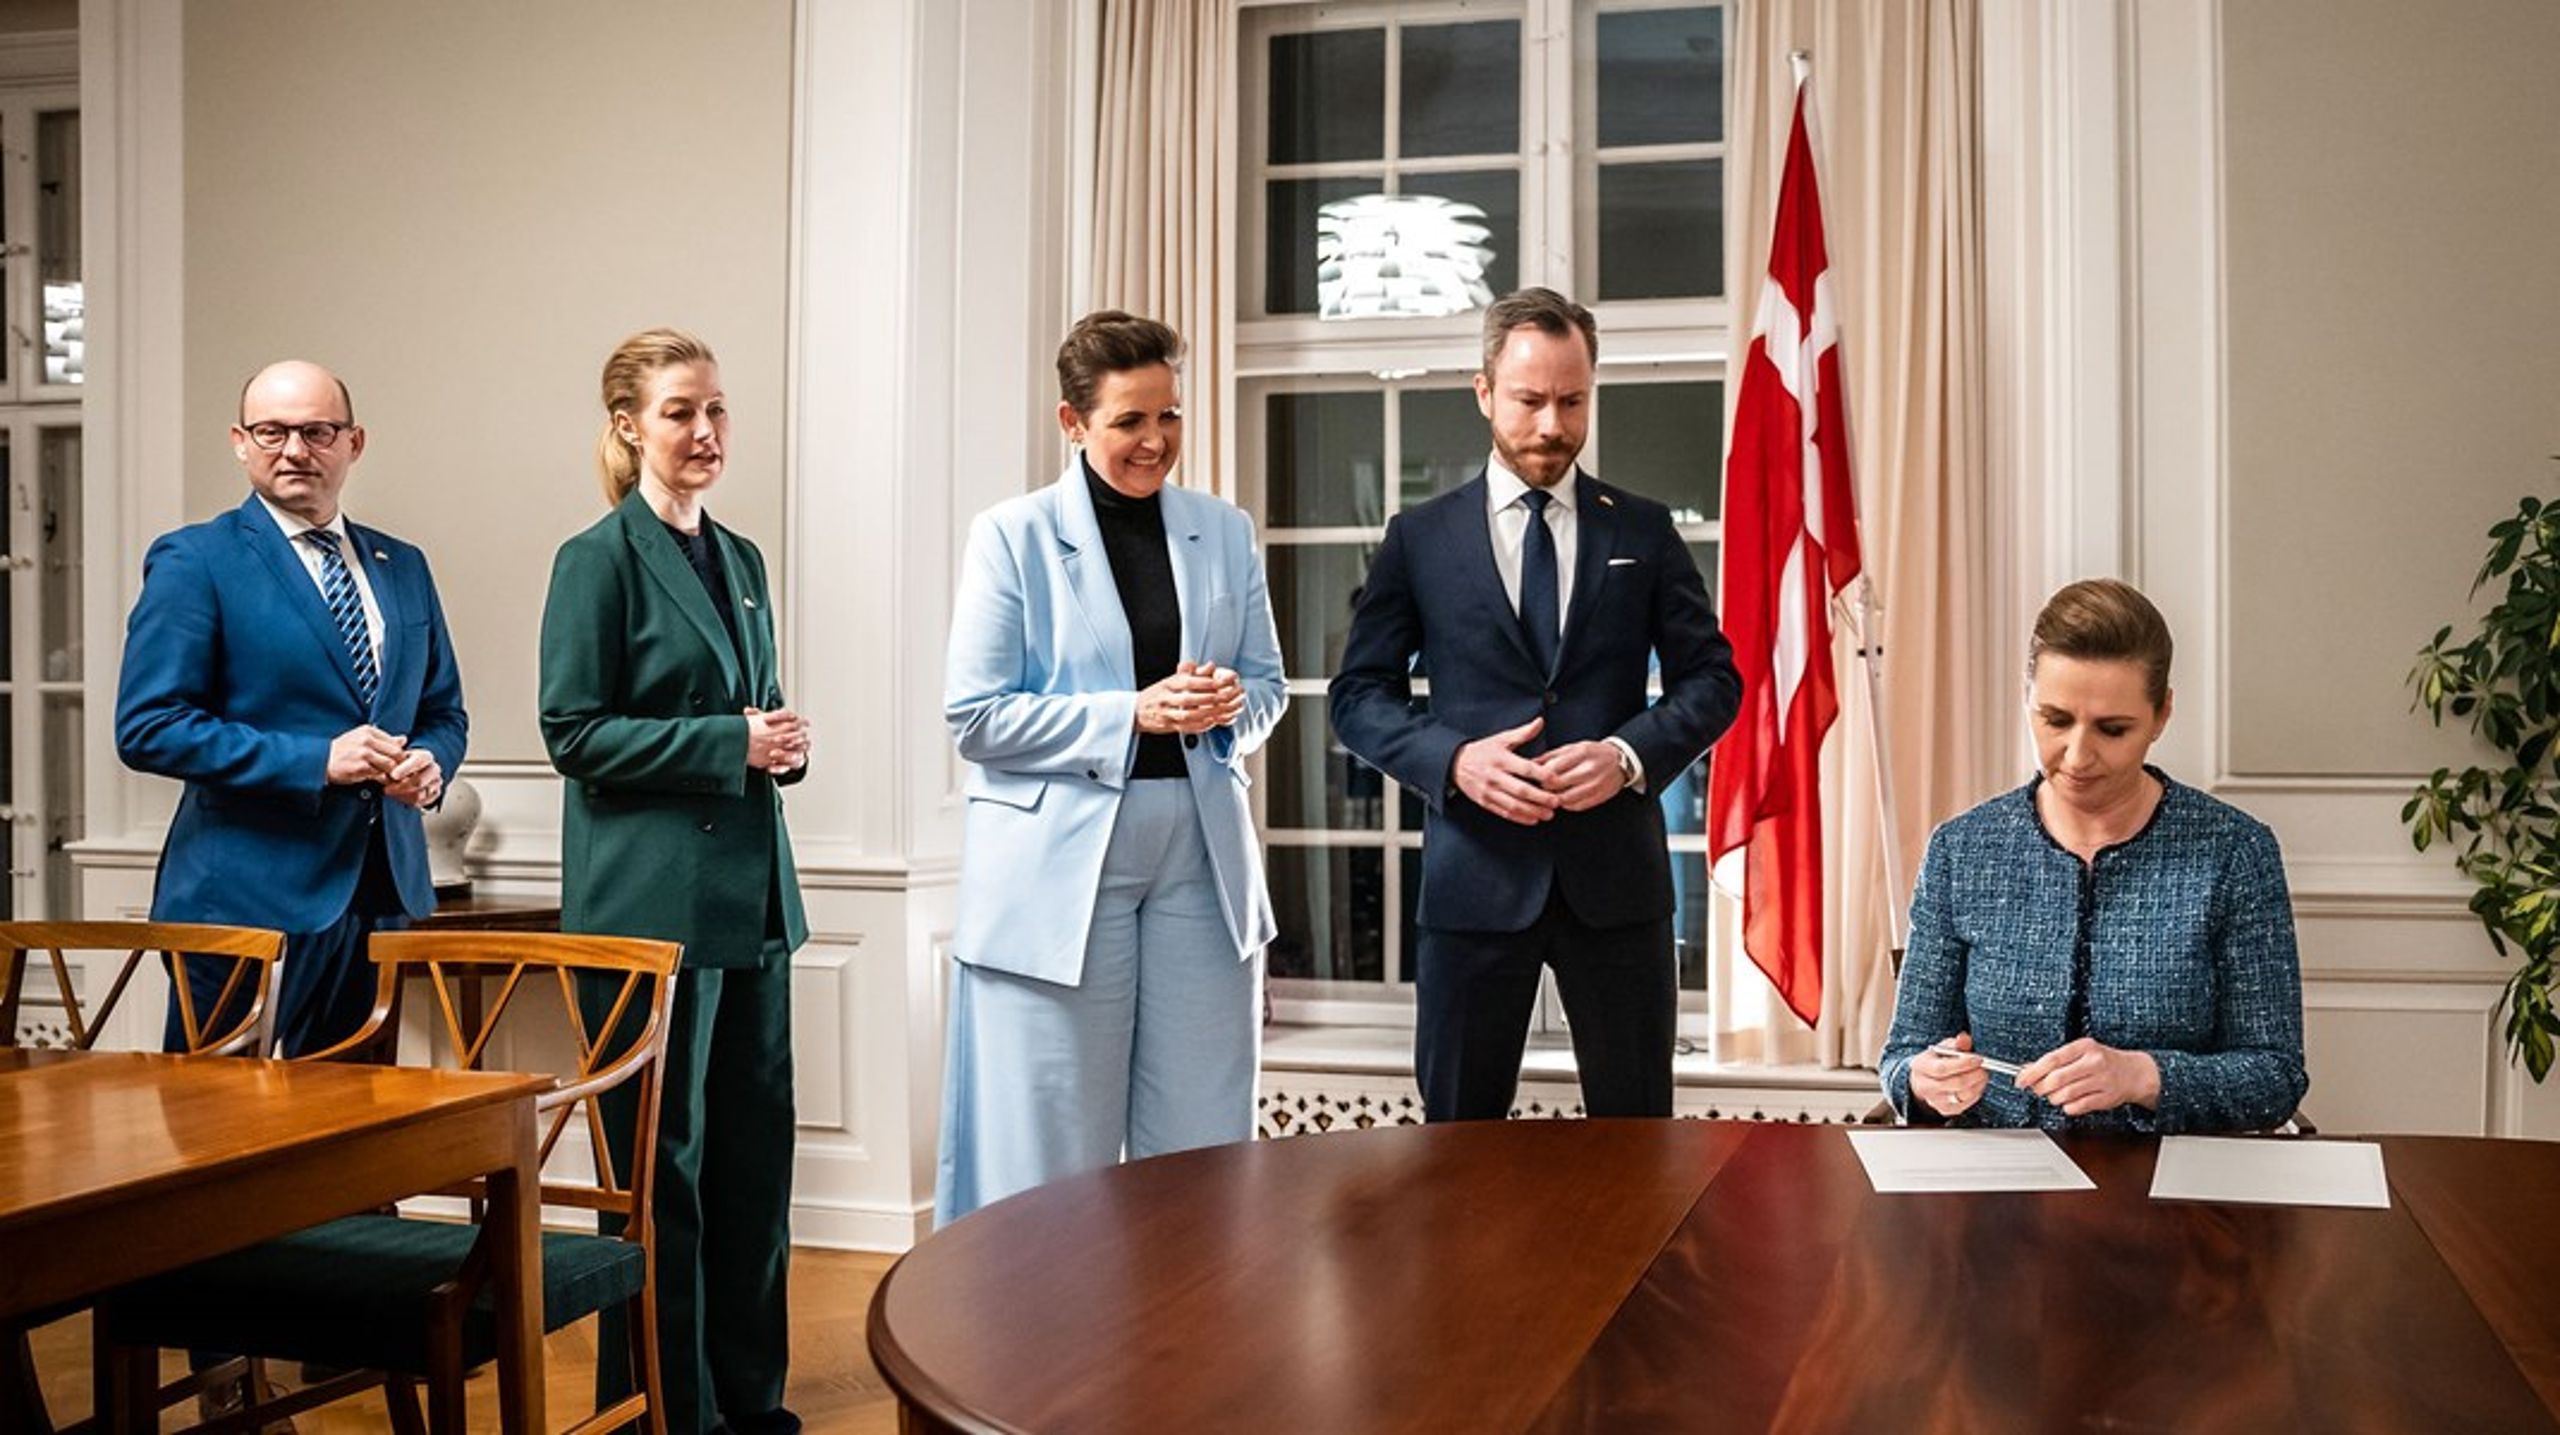 Søndag aften underskrev partiledere for et bredt flertal i Folketinget et nyt såkaldt nationalt kompromis om dansk sikkerhedspolitik.